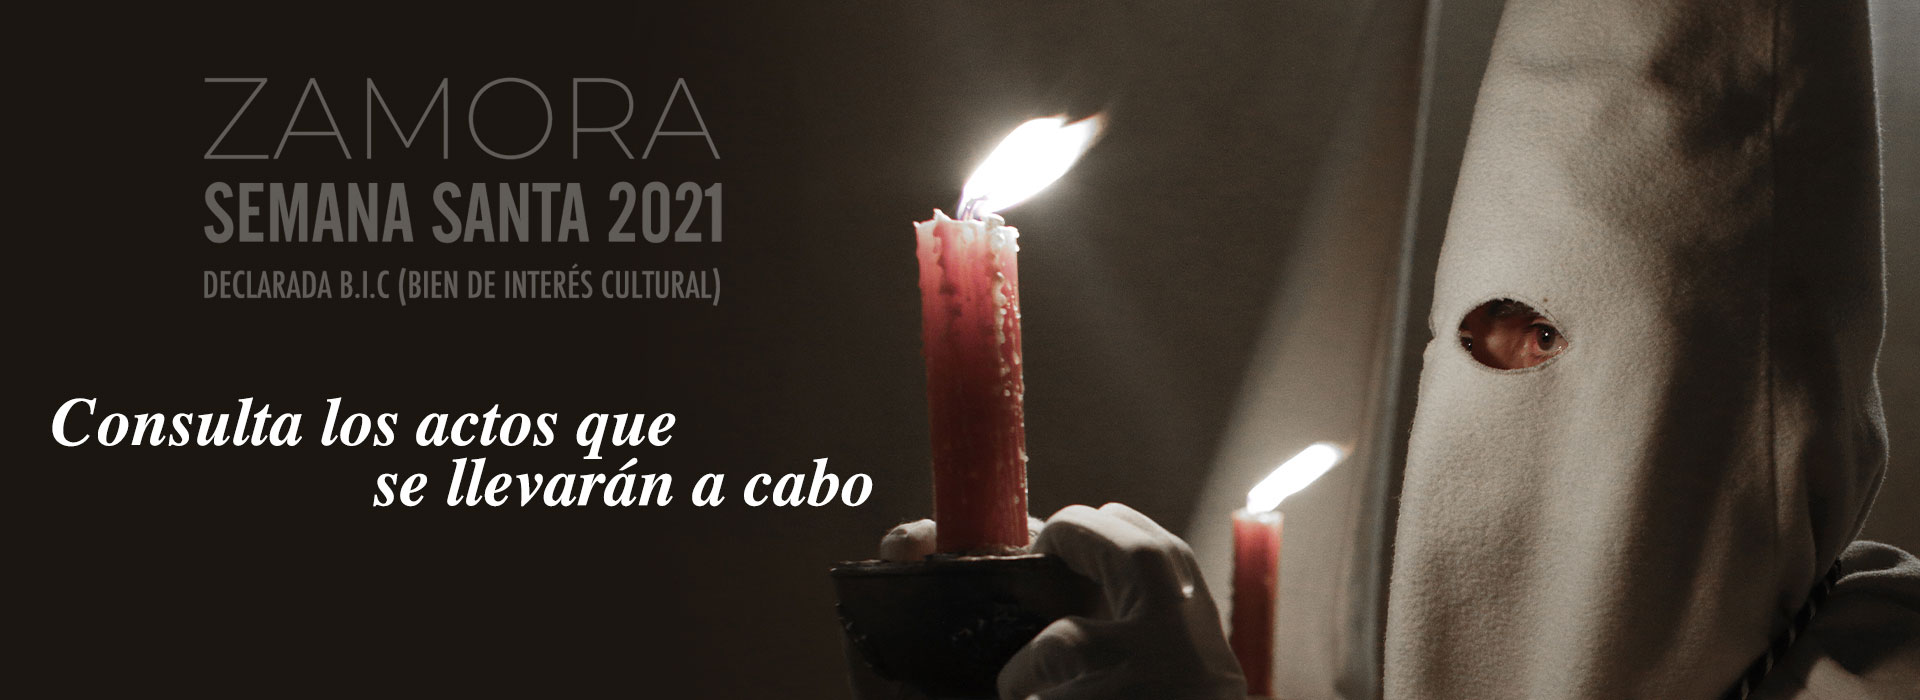 Programa de actos Semana Santa Zamora 2021